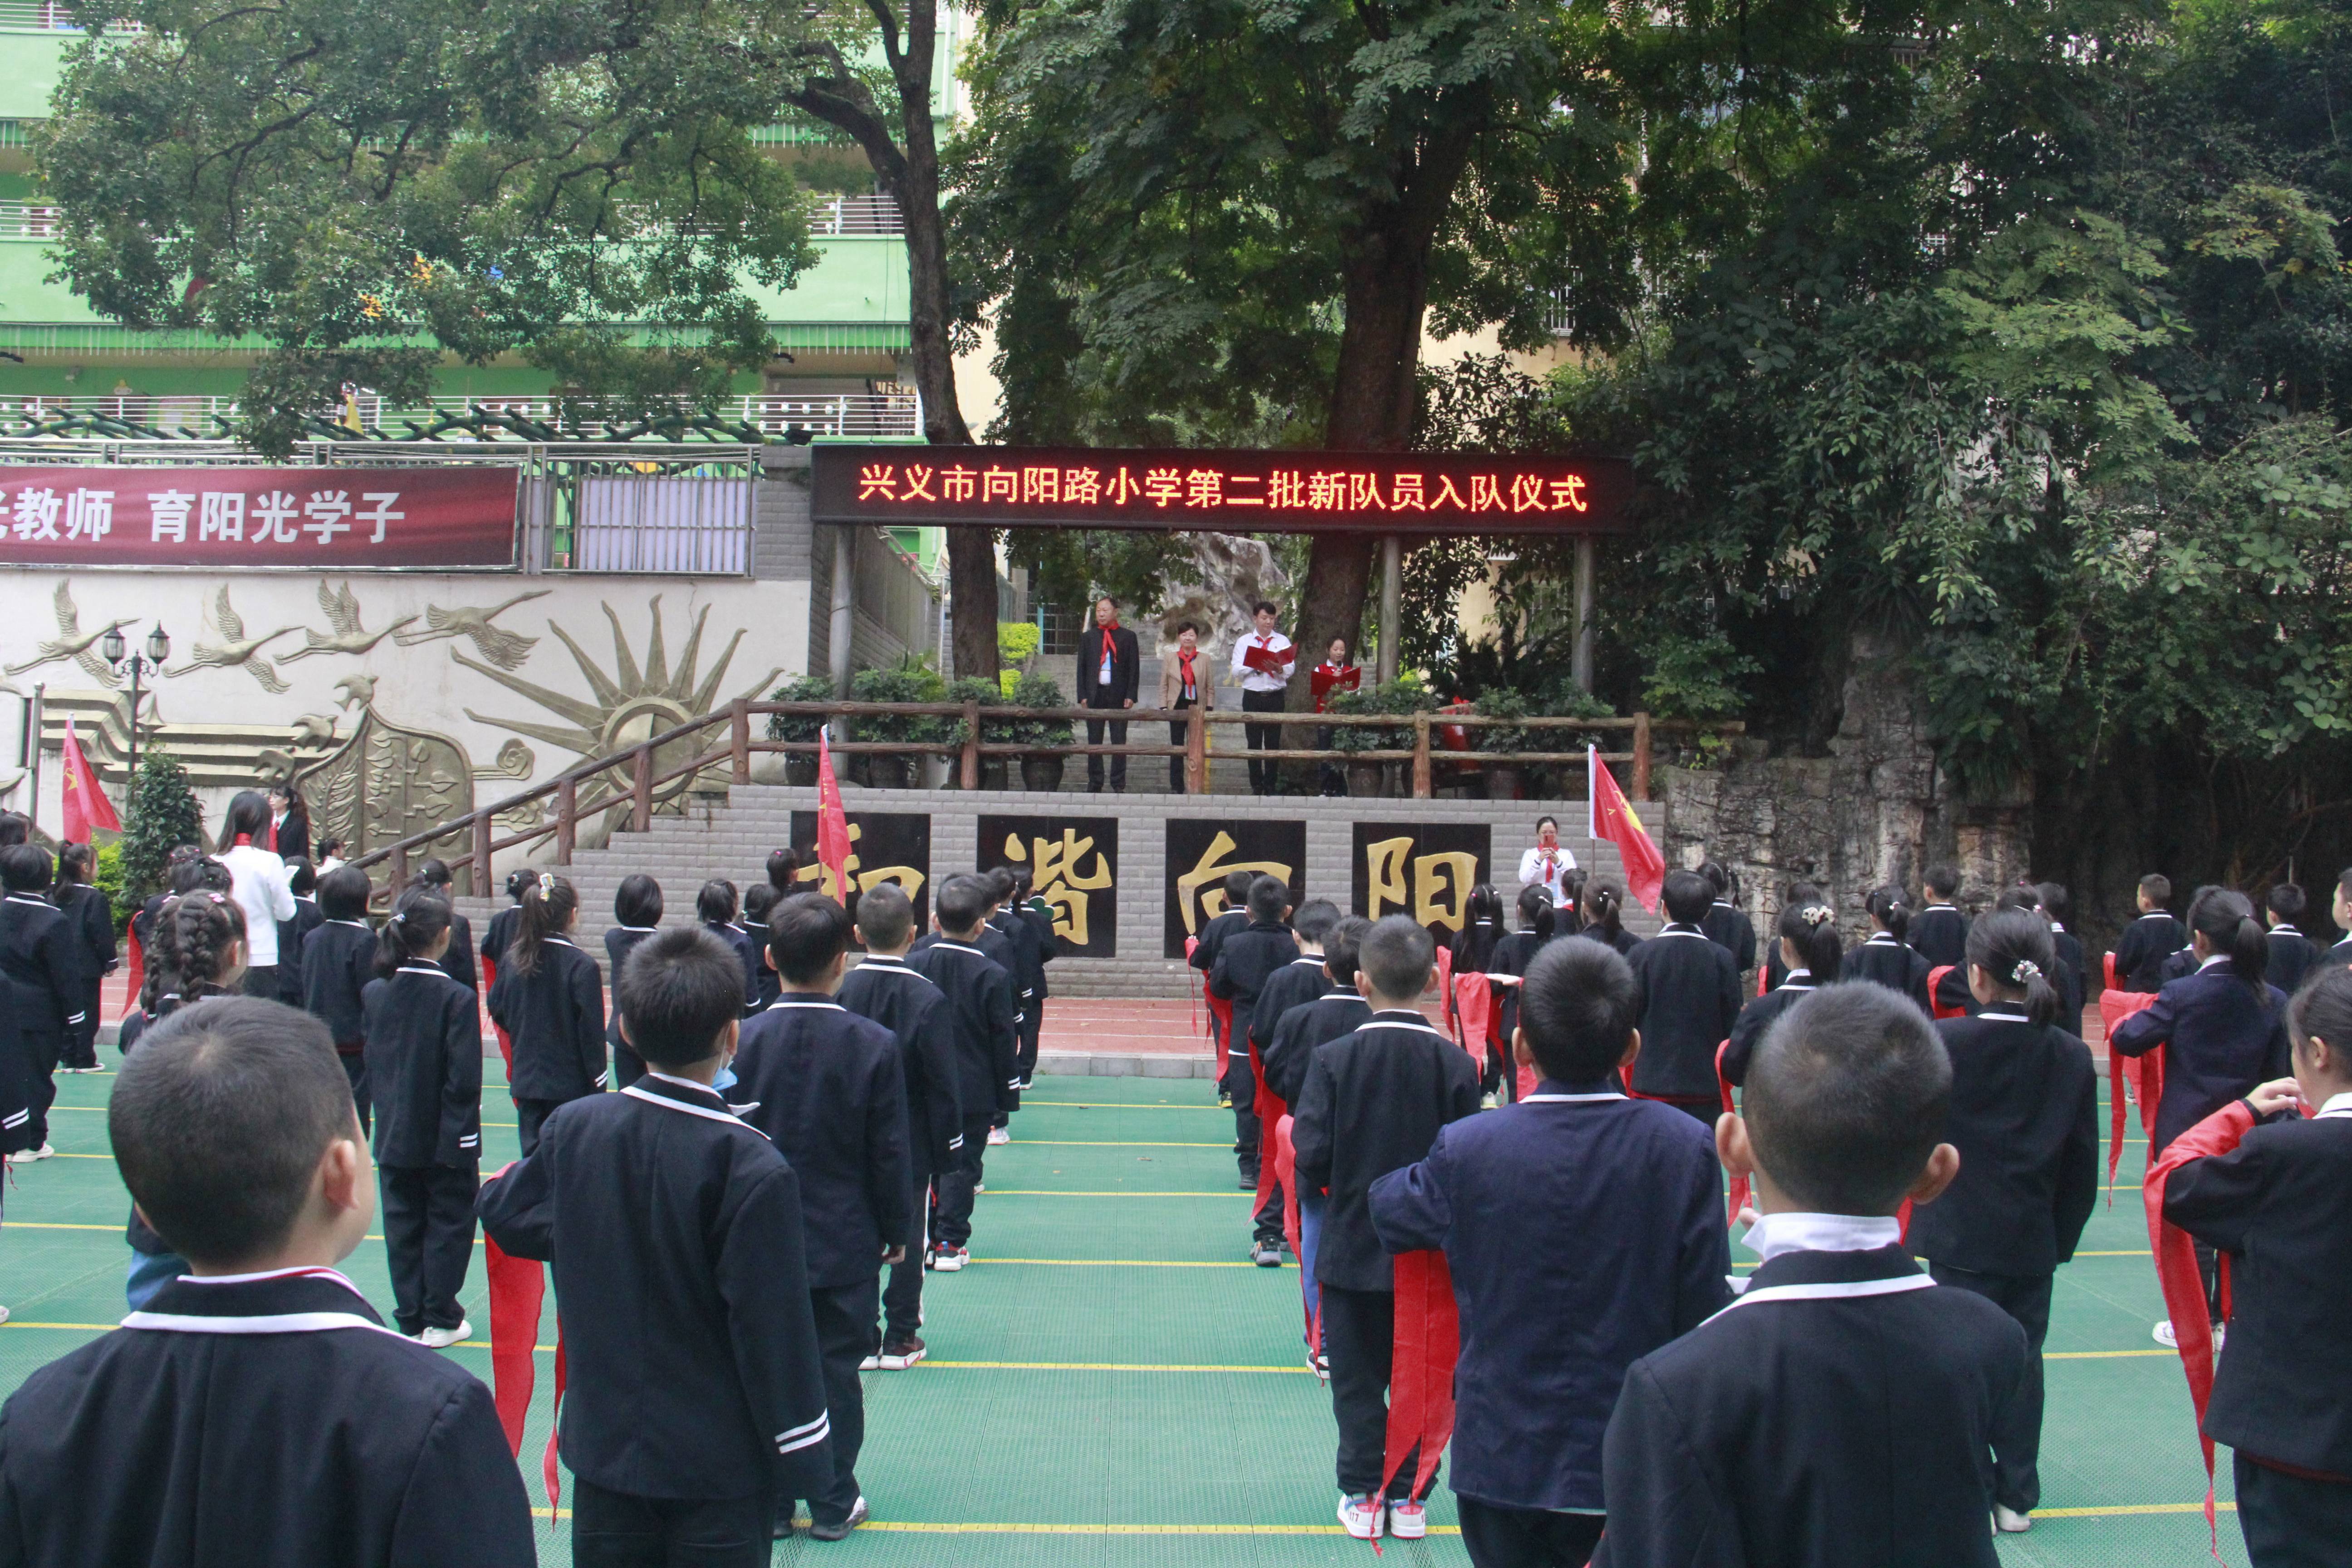 兴义市向阳路小学举行入队仪式 256名学生光荣宣誓入队